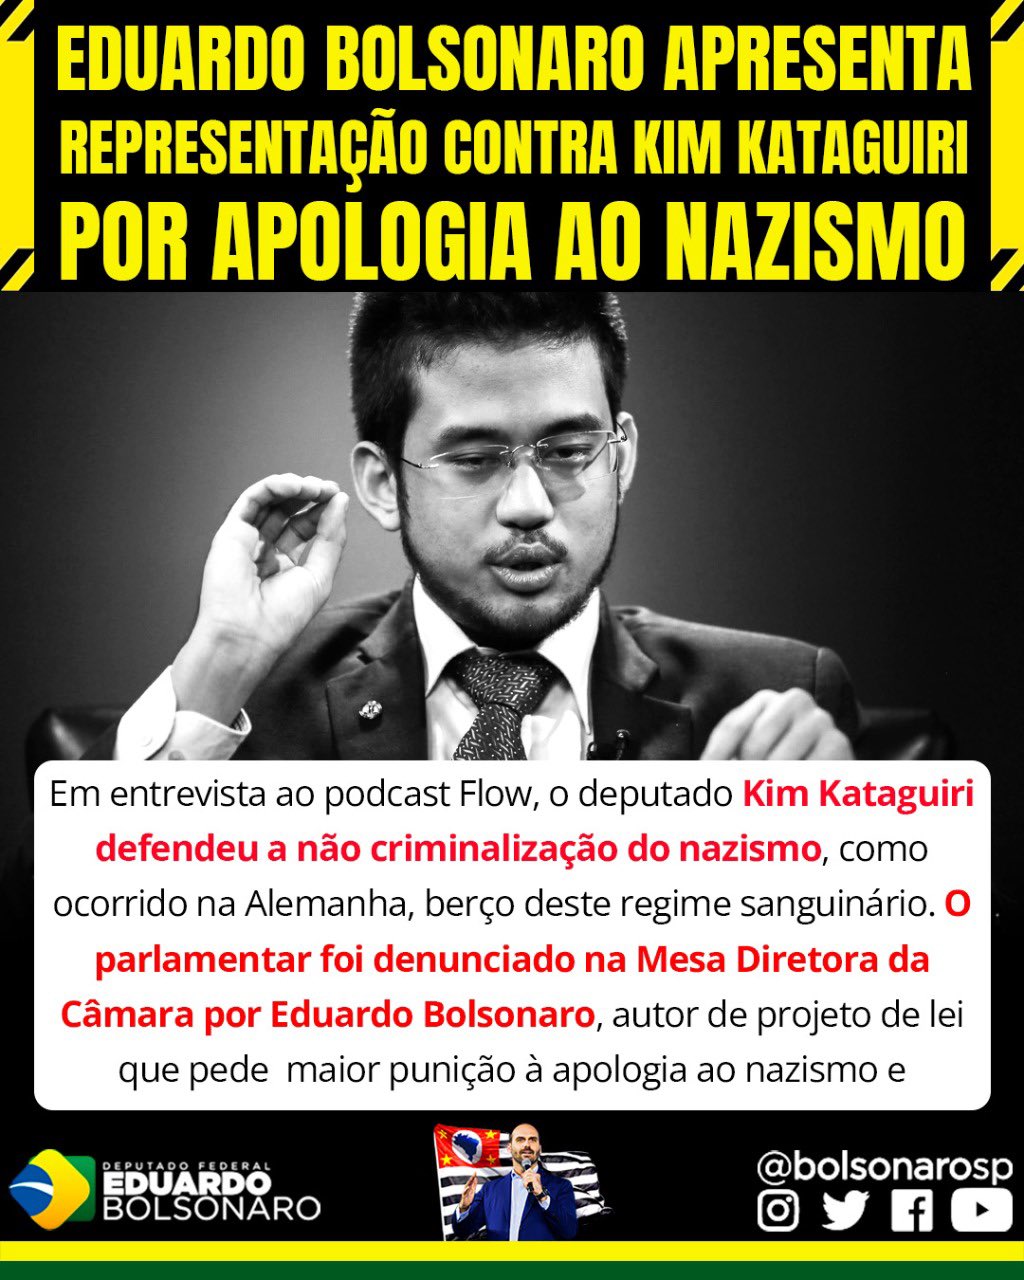 Kim Kataguiri - É o xadrez 4D de Bolsonaro. Agrada o CENTRÃO em nome da  agenda, e não avança na agenda por causa do CENTRÃO. É o toma lá, toma  lá!